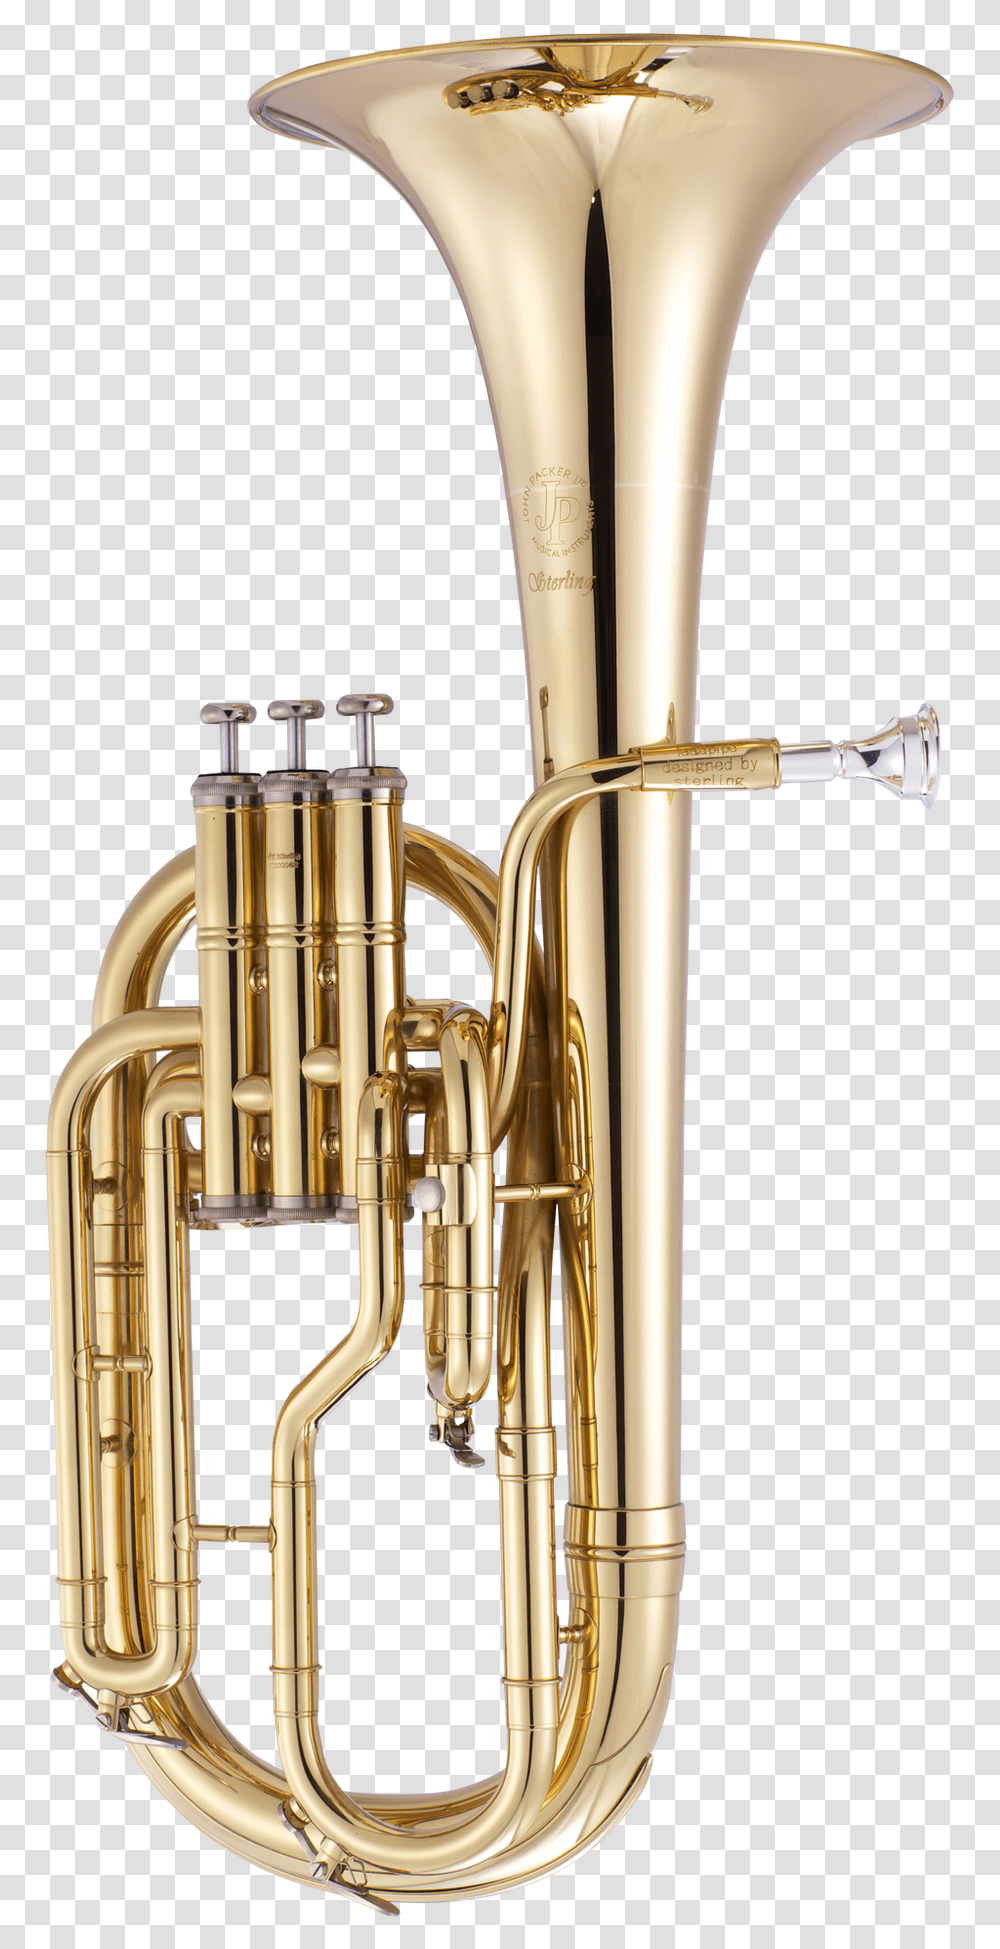 John Packer Jp372 Sterling Tenor Horn Jp Musical Instruments Tenor Horn, Tuba, Brass Section, Euphonium, Sink Faucet Transparent Png